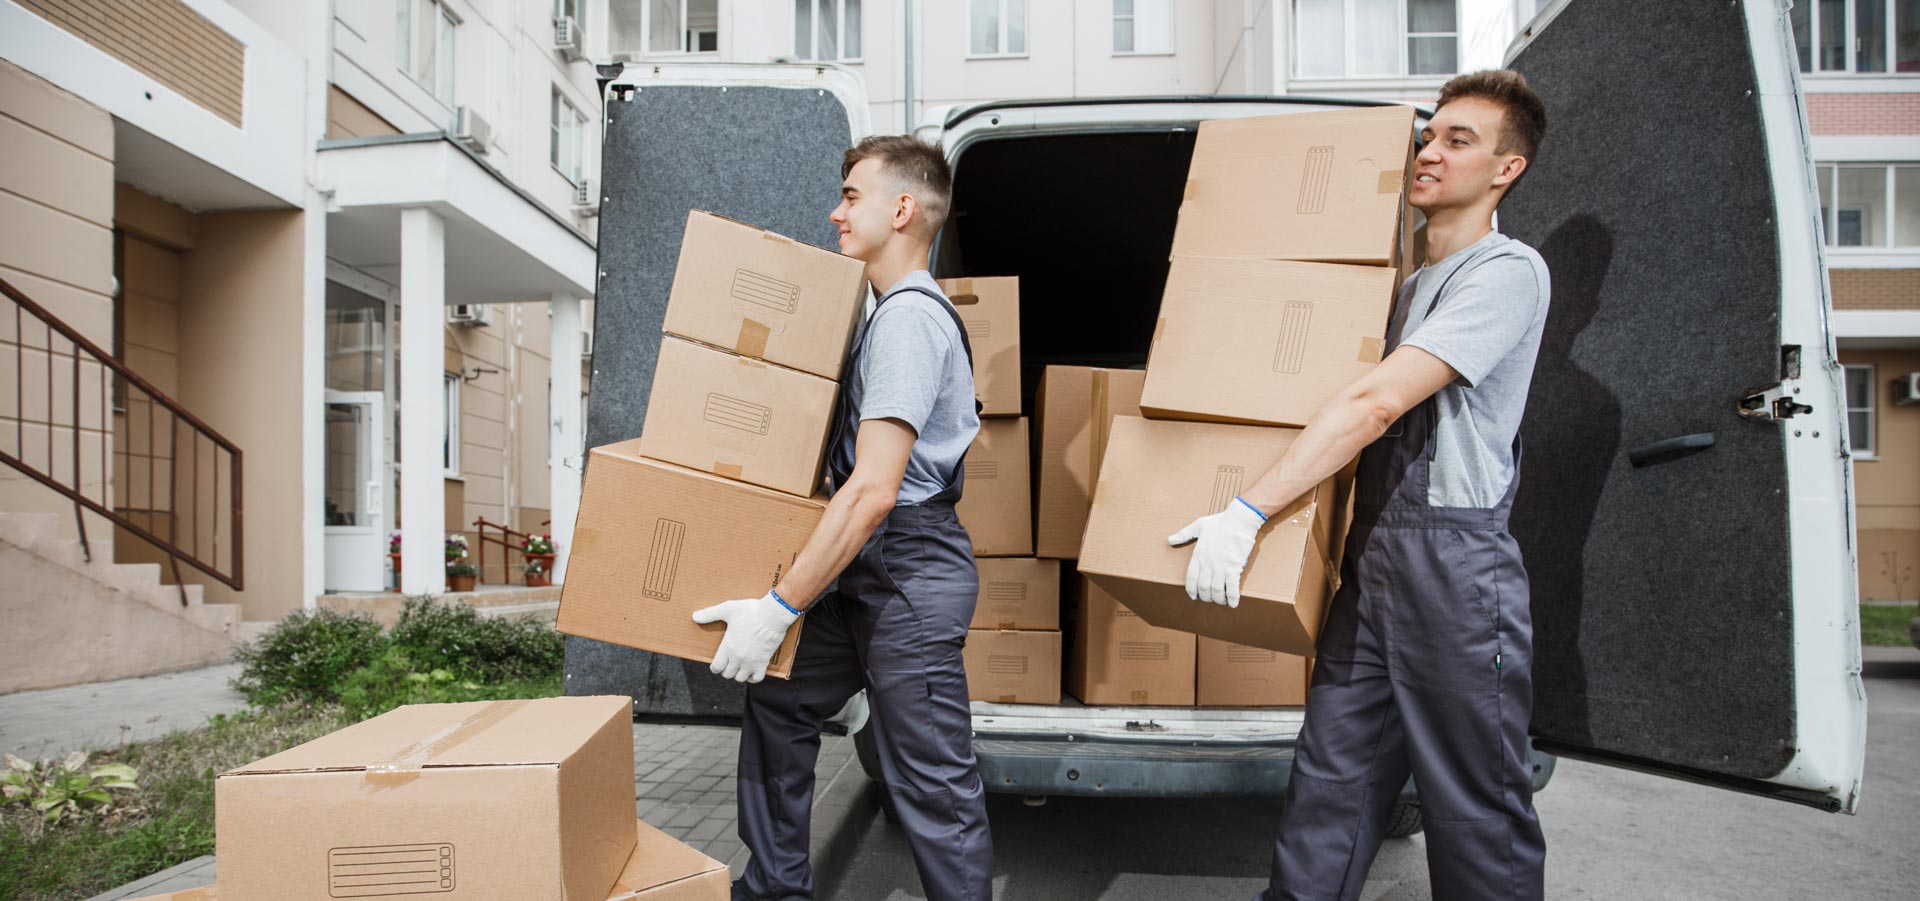 2 déménageurs sortent des cartons d'un camion